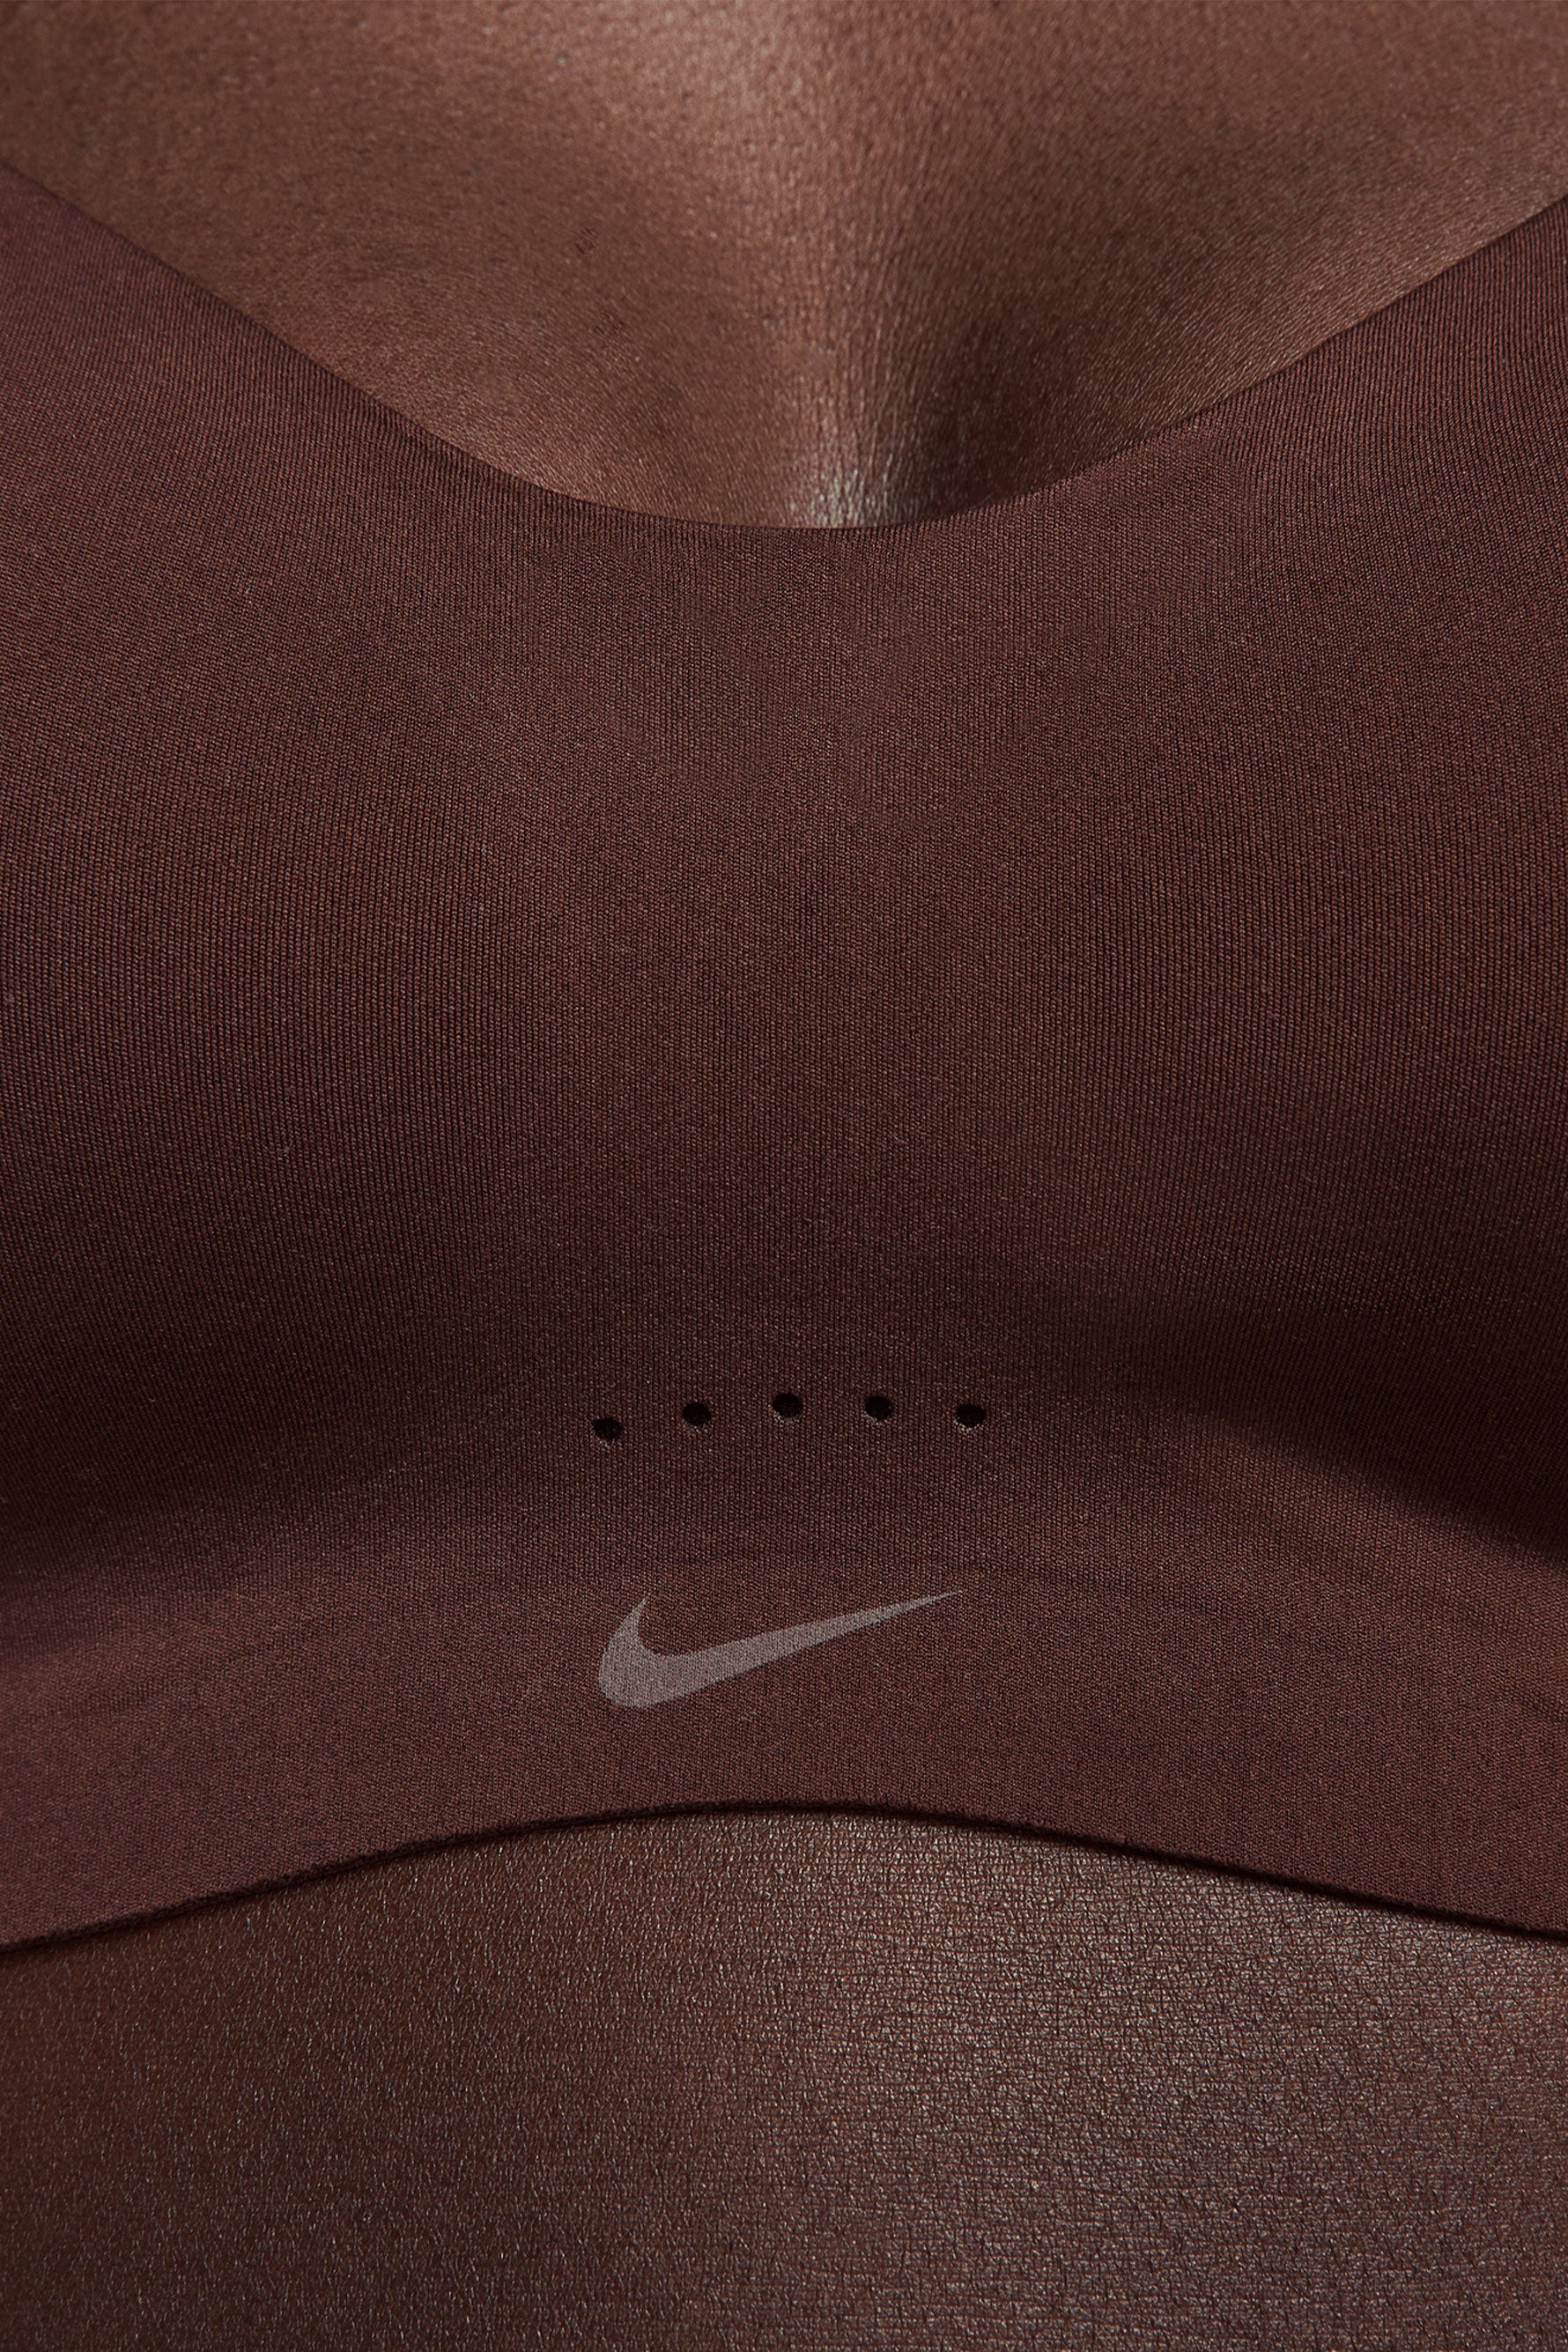 Nike Training Alate Minimalist Dri-FIT light support sports bra